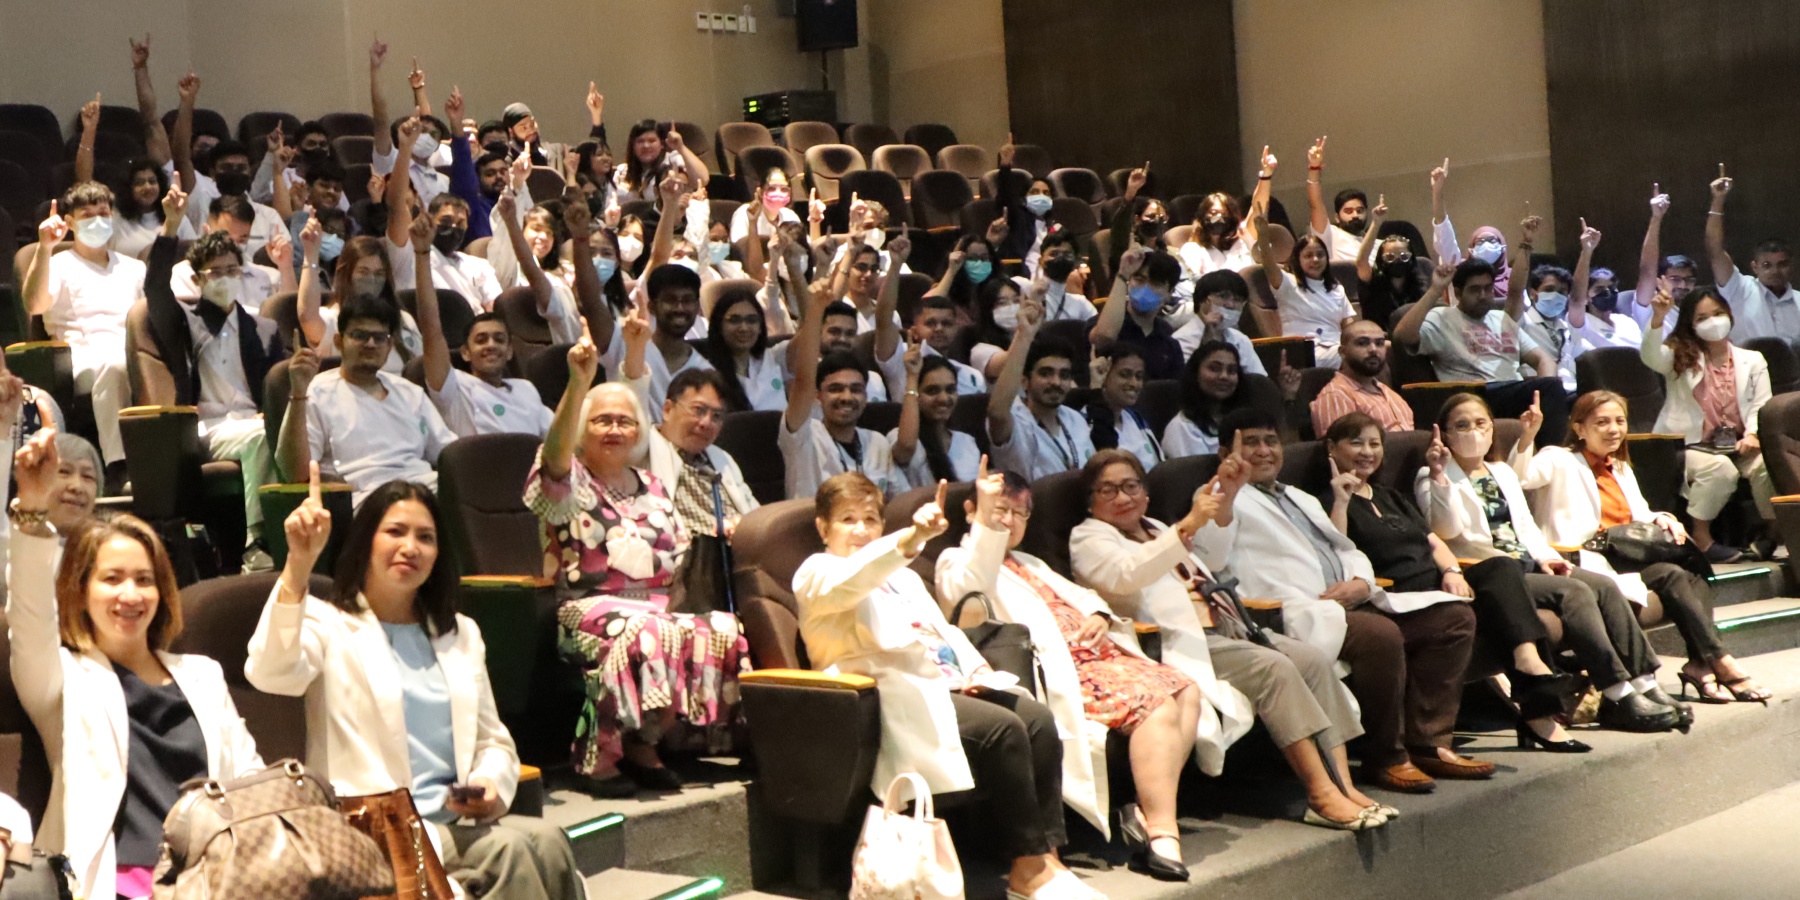 Dr. Enriquez lauds int’l students, vows to provide holistic support